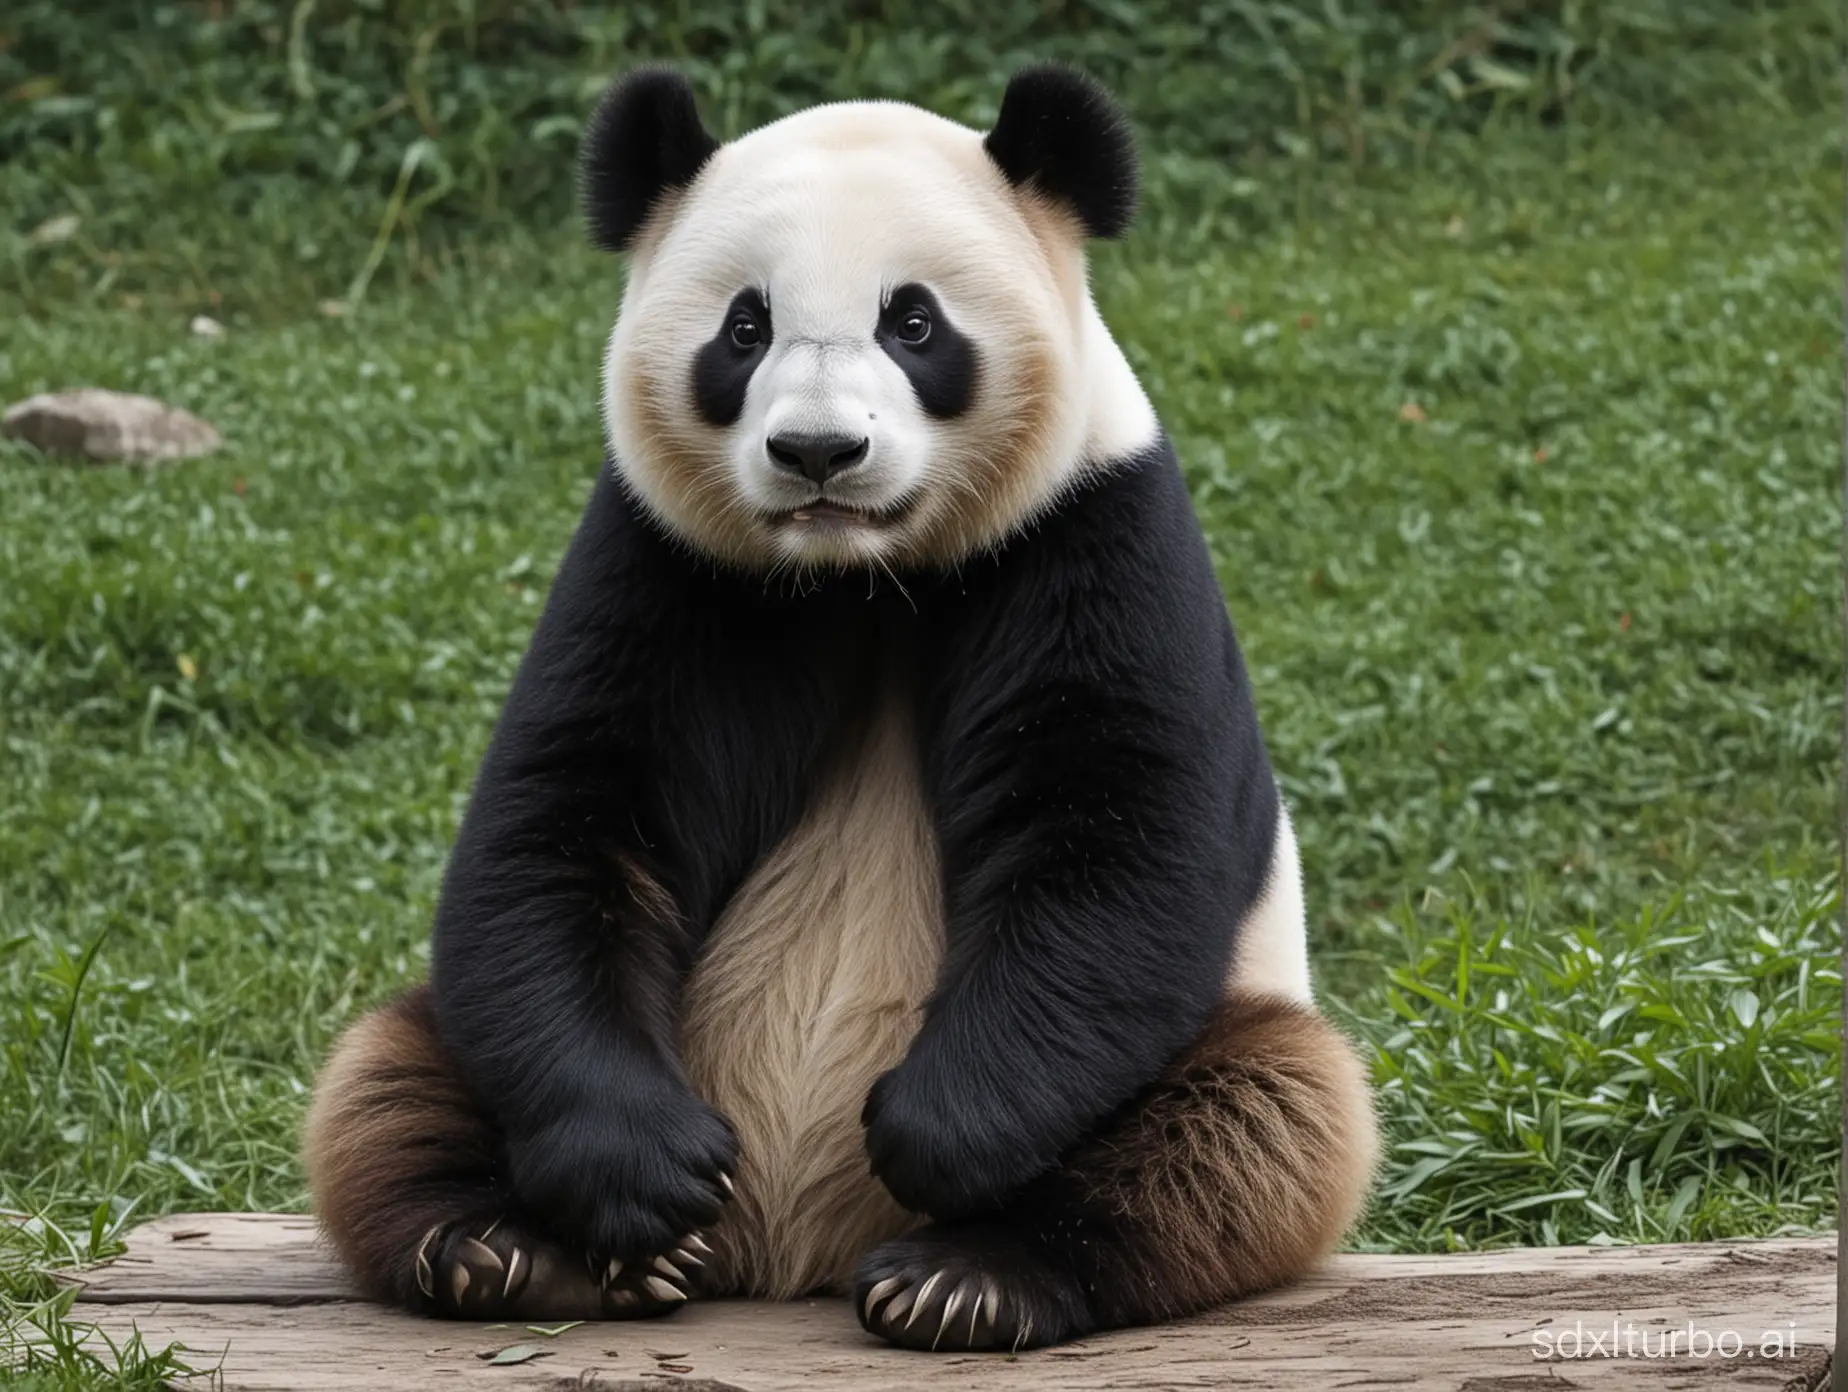 sitting panda